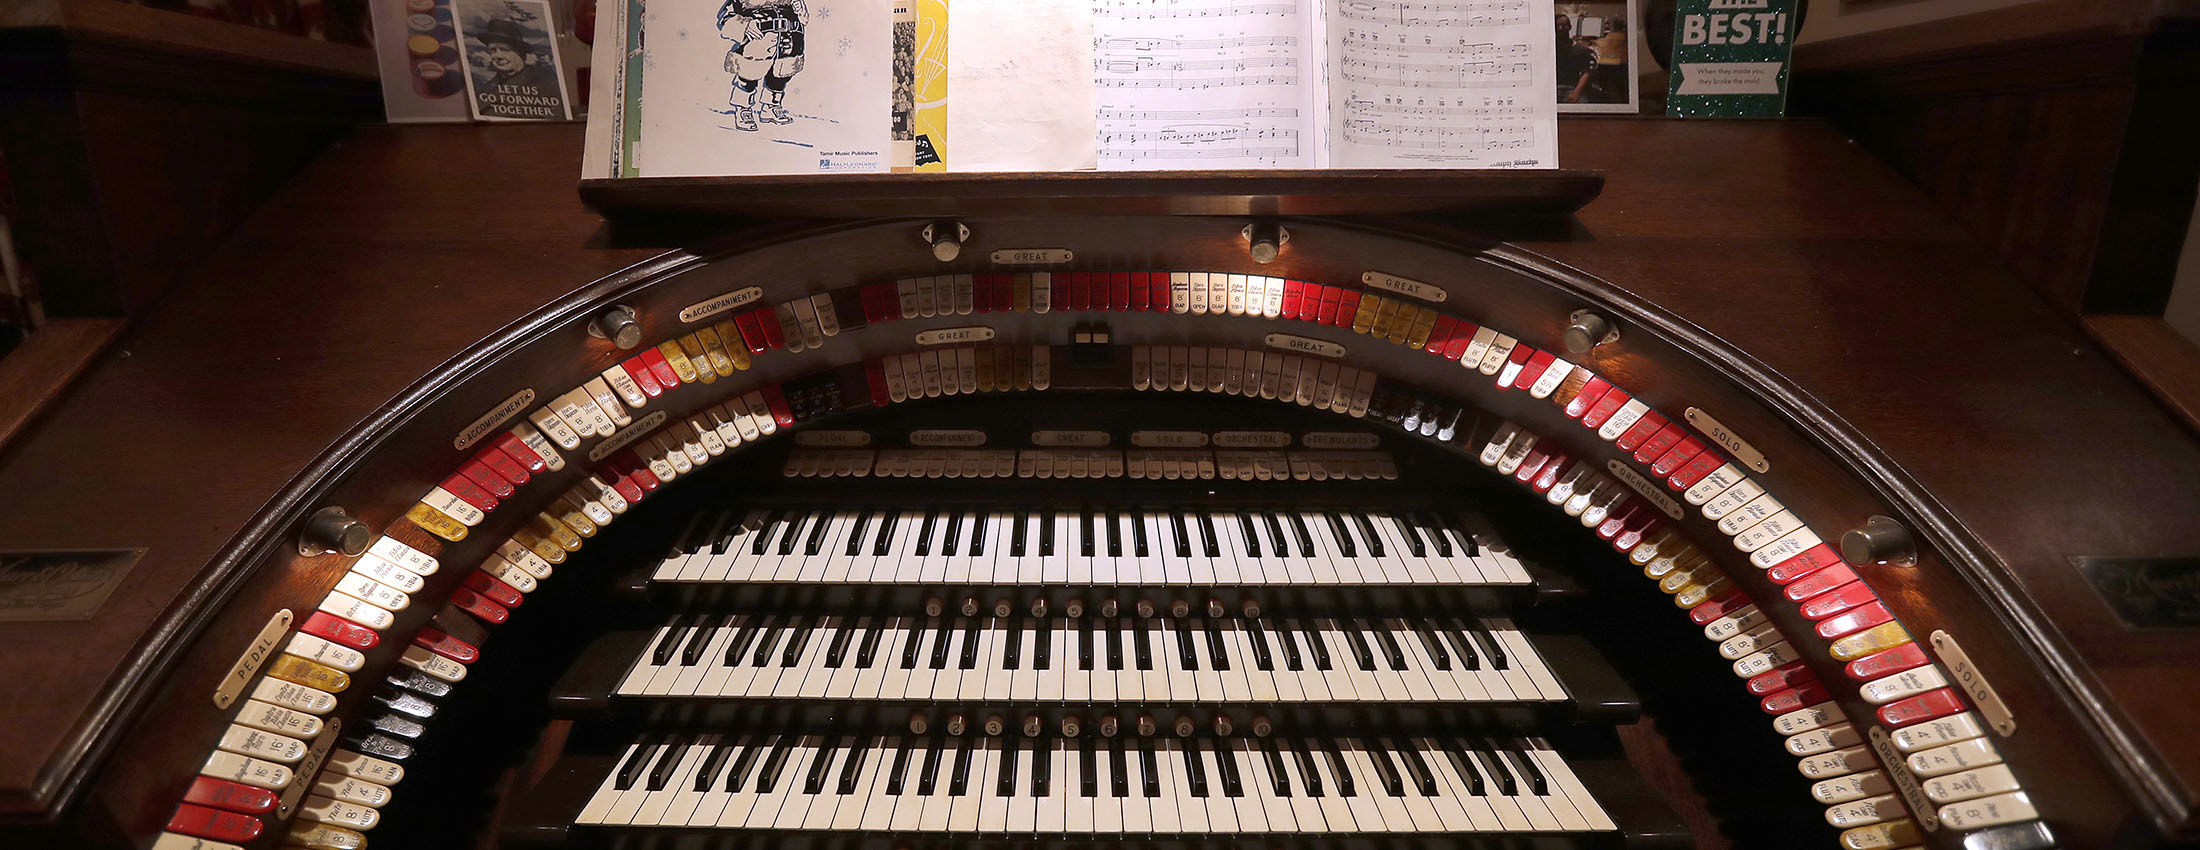 wurlitzer organ model d-72